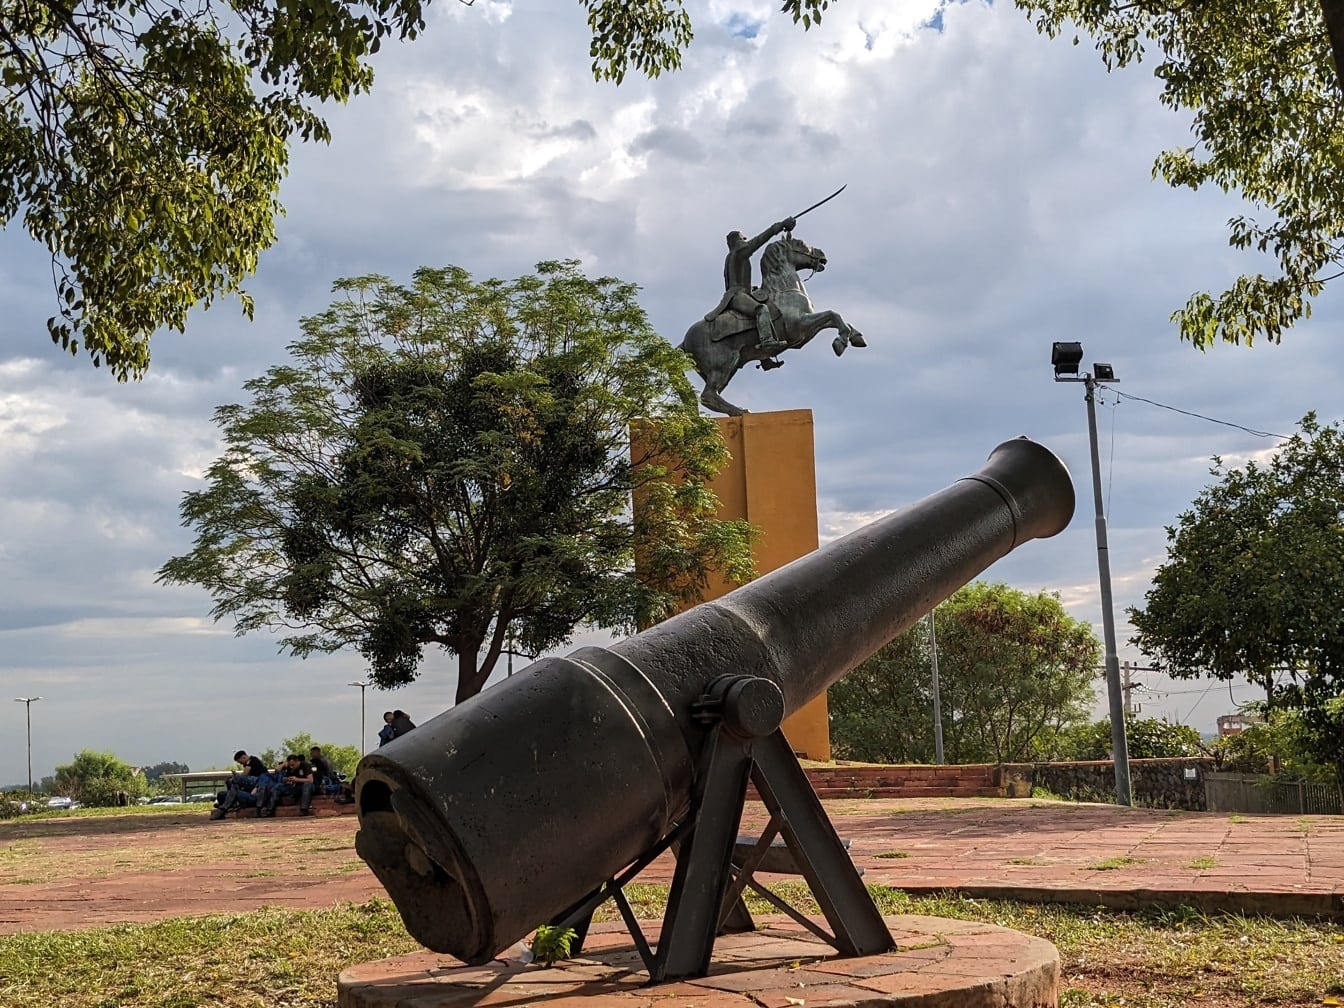 Skulptur af en kanon og en statue af en mand på en hest i Victory Park i Asuncion, en hovedstad i republikken Paraguay